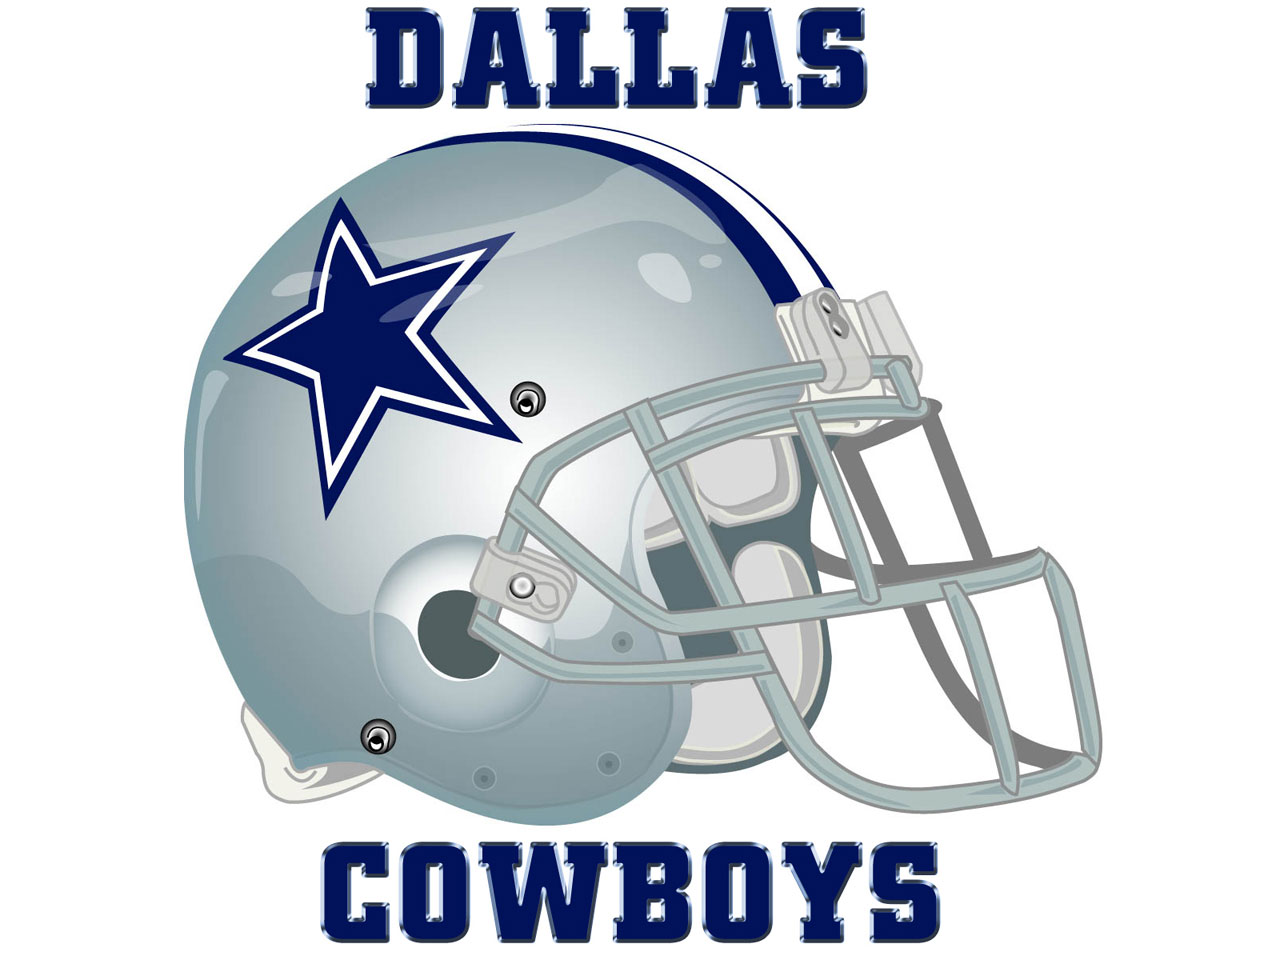 Desktop Wallpaper Of Dallas Cowboys Playoff Schedule